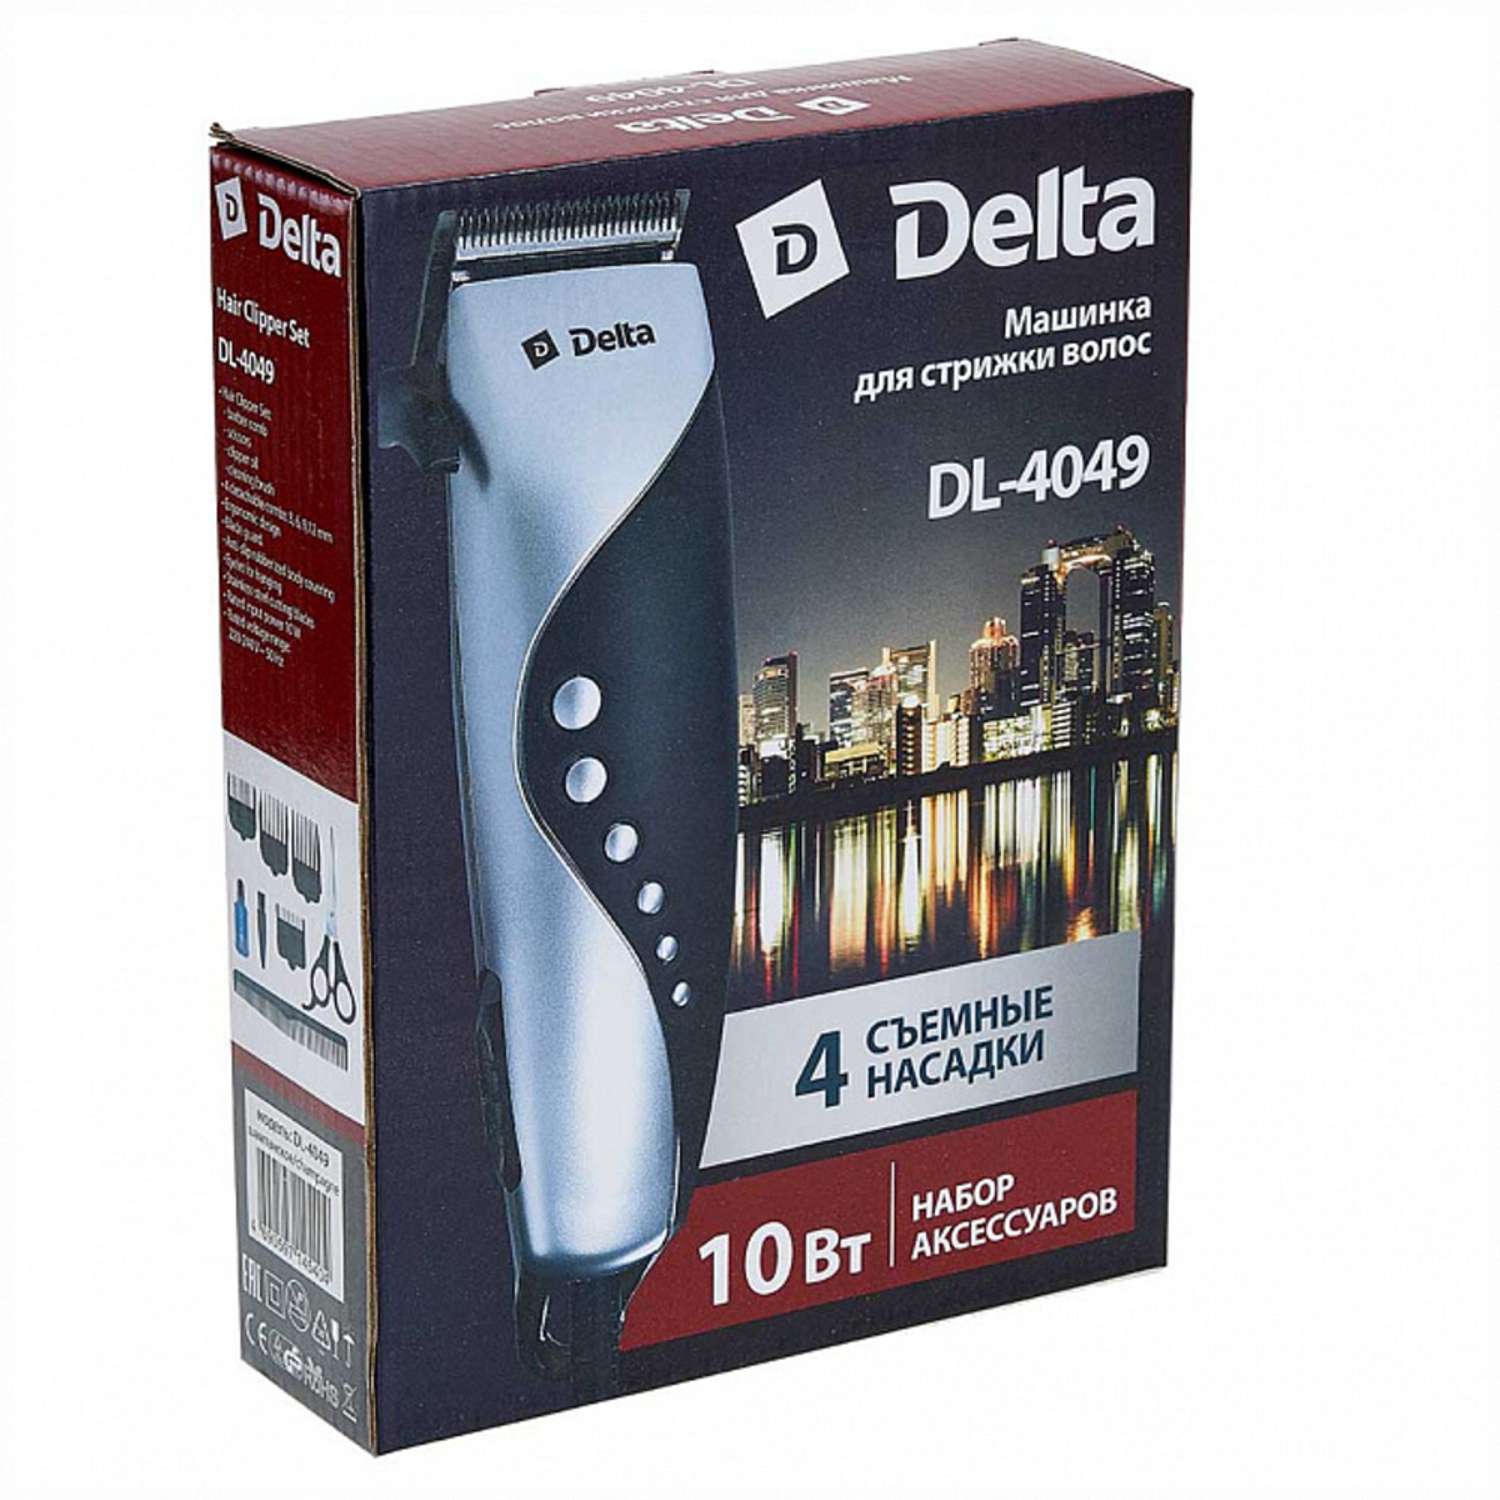 Машинка для стрижки волос Delta DL-4049 серебристый 10Вт 4 съемных гребня - фото 3